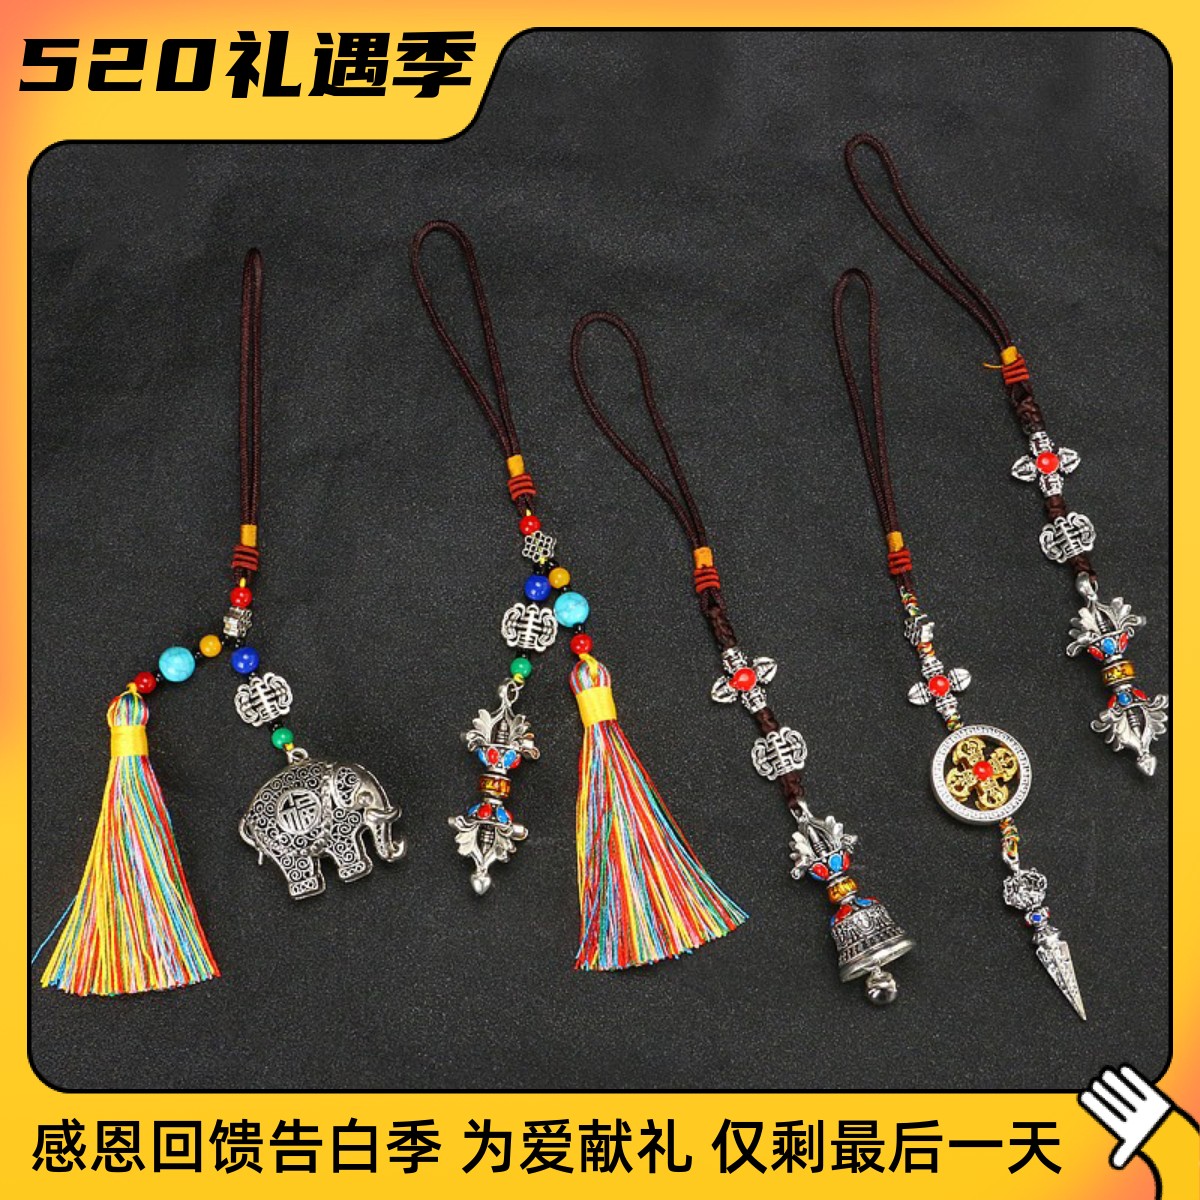 藏式吊坠十字金刚杵吊牌藏族工艺品拉萨纪念品西藏小挂件饰品项链